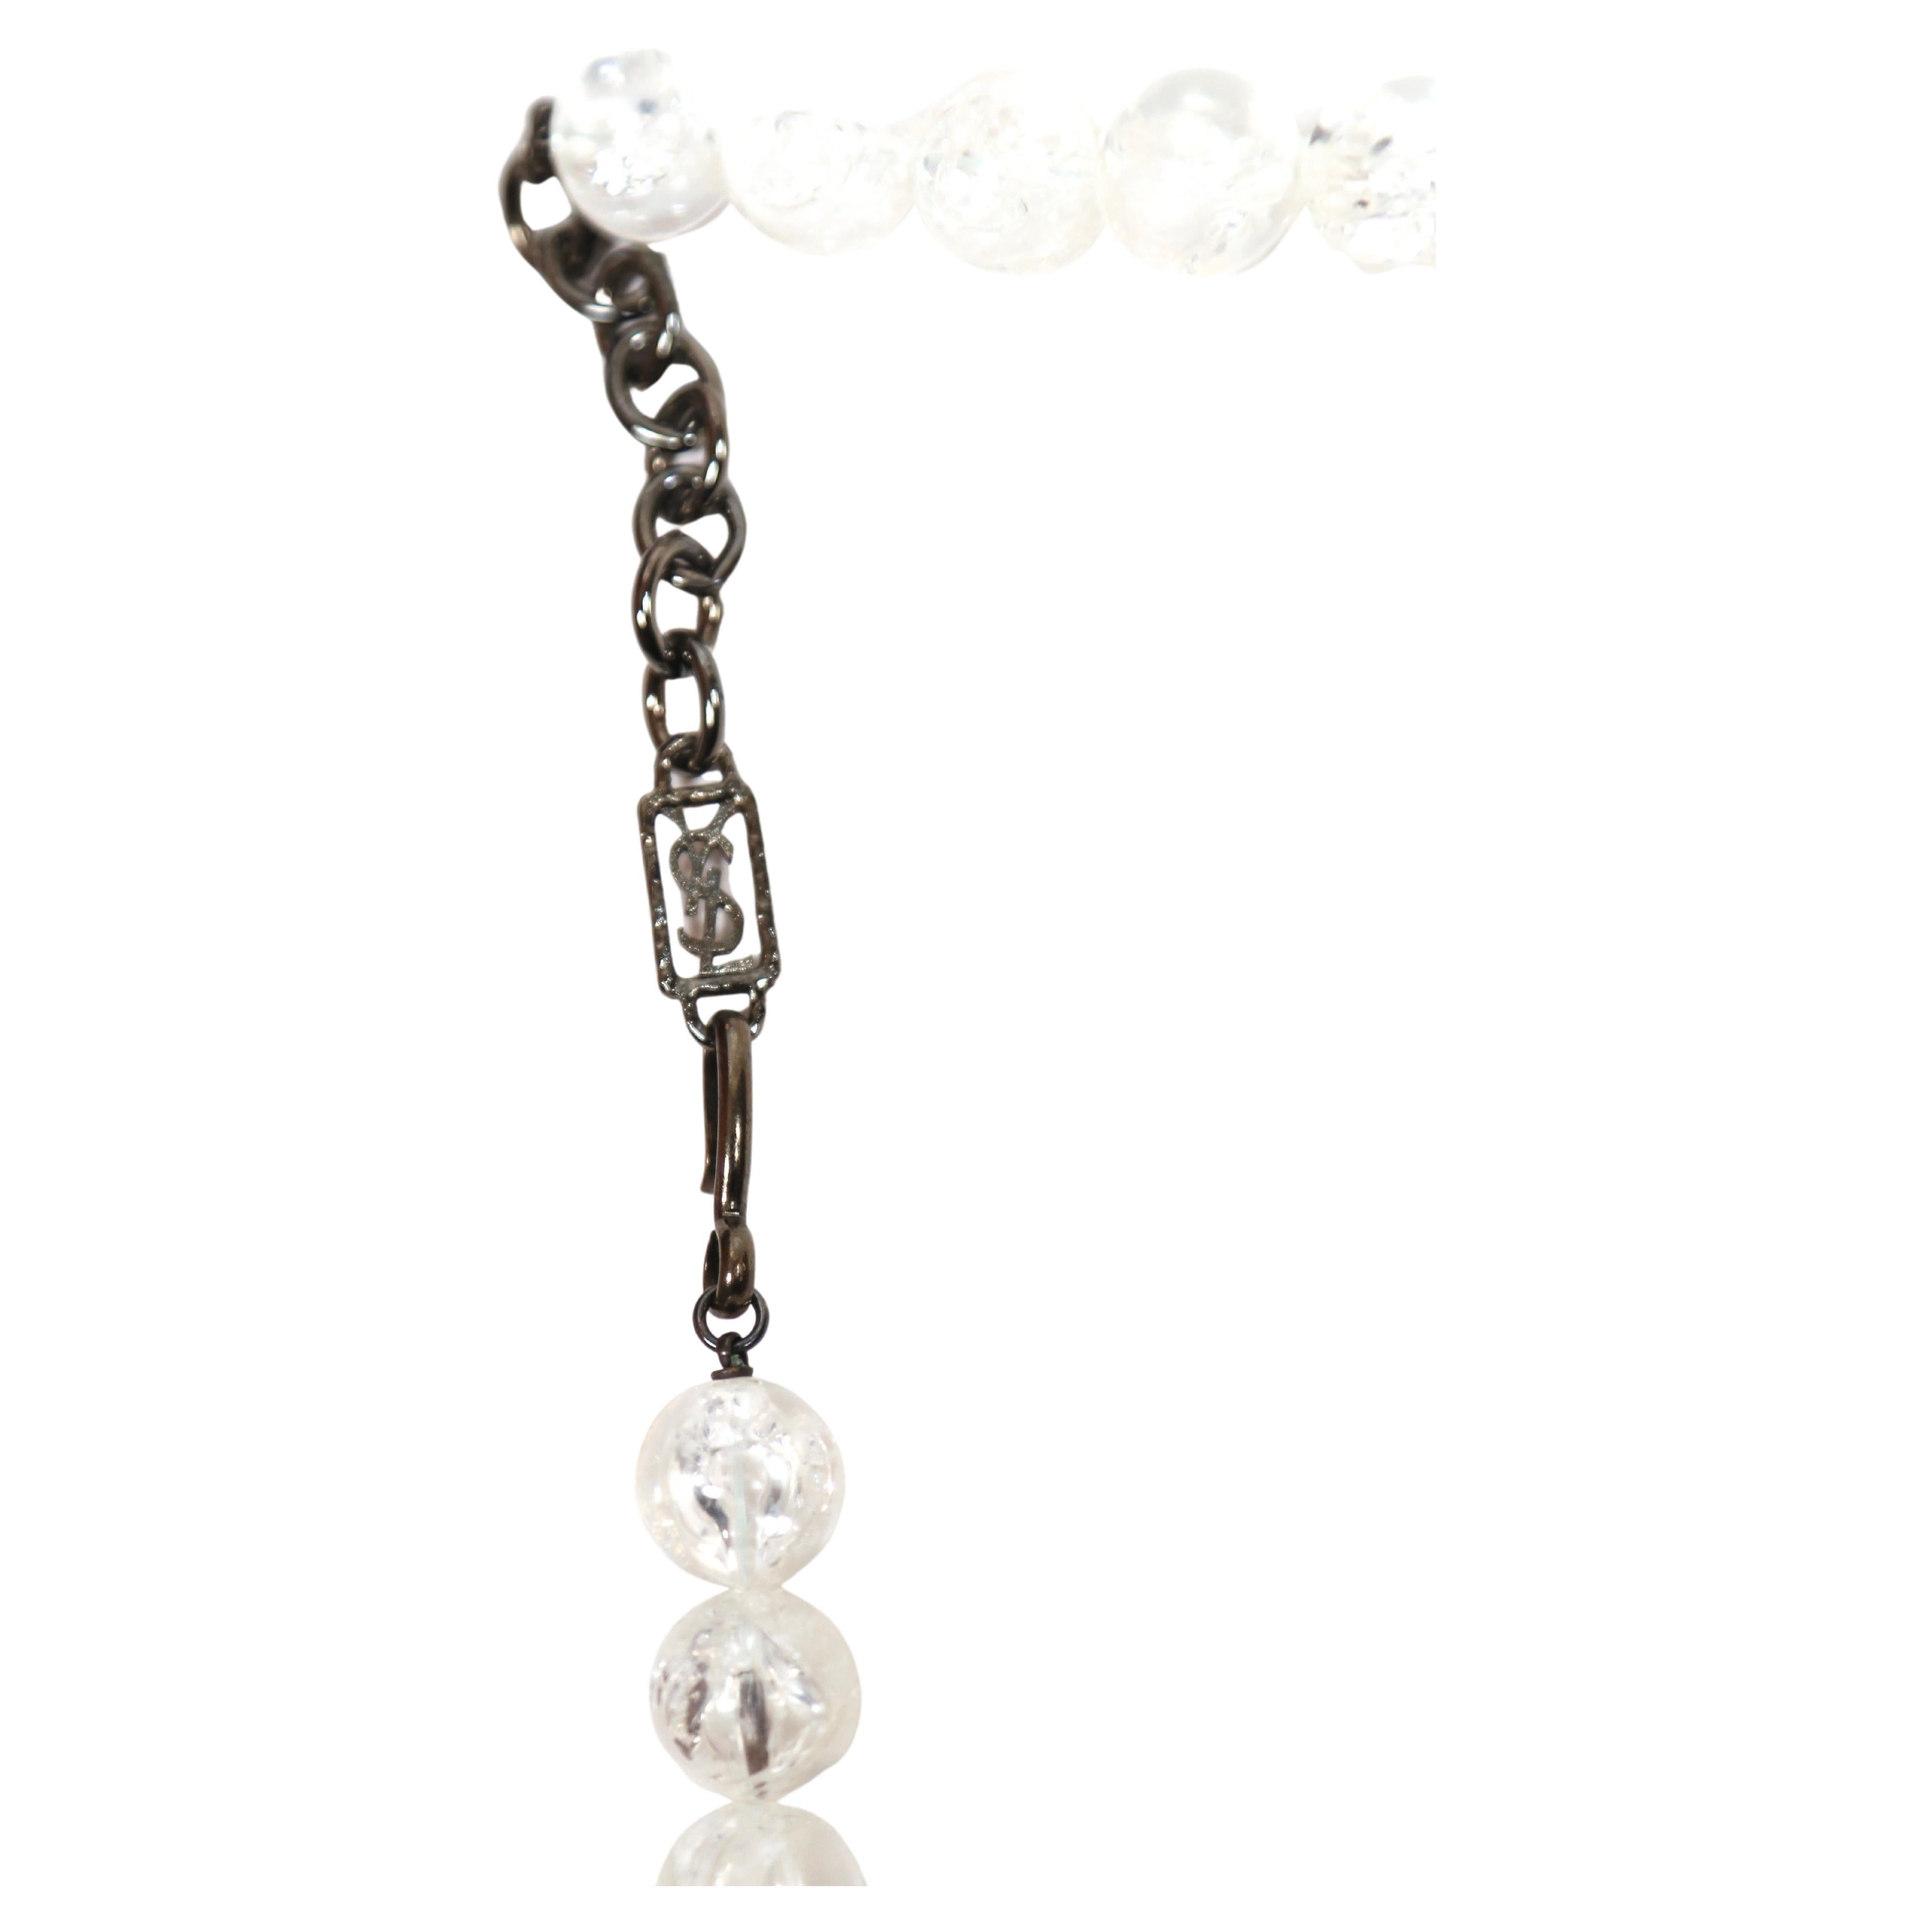 Dramatique collier en perles de lucite avec des feuilles émaillées crème et noir, en métal argenté, conçu par Yves Saint Laurent et datant du début des années 1990. La longueur est réglable d'environ : 15-17.5